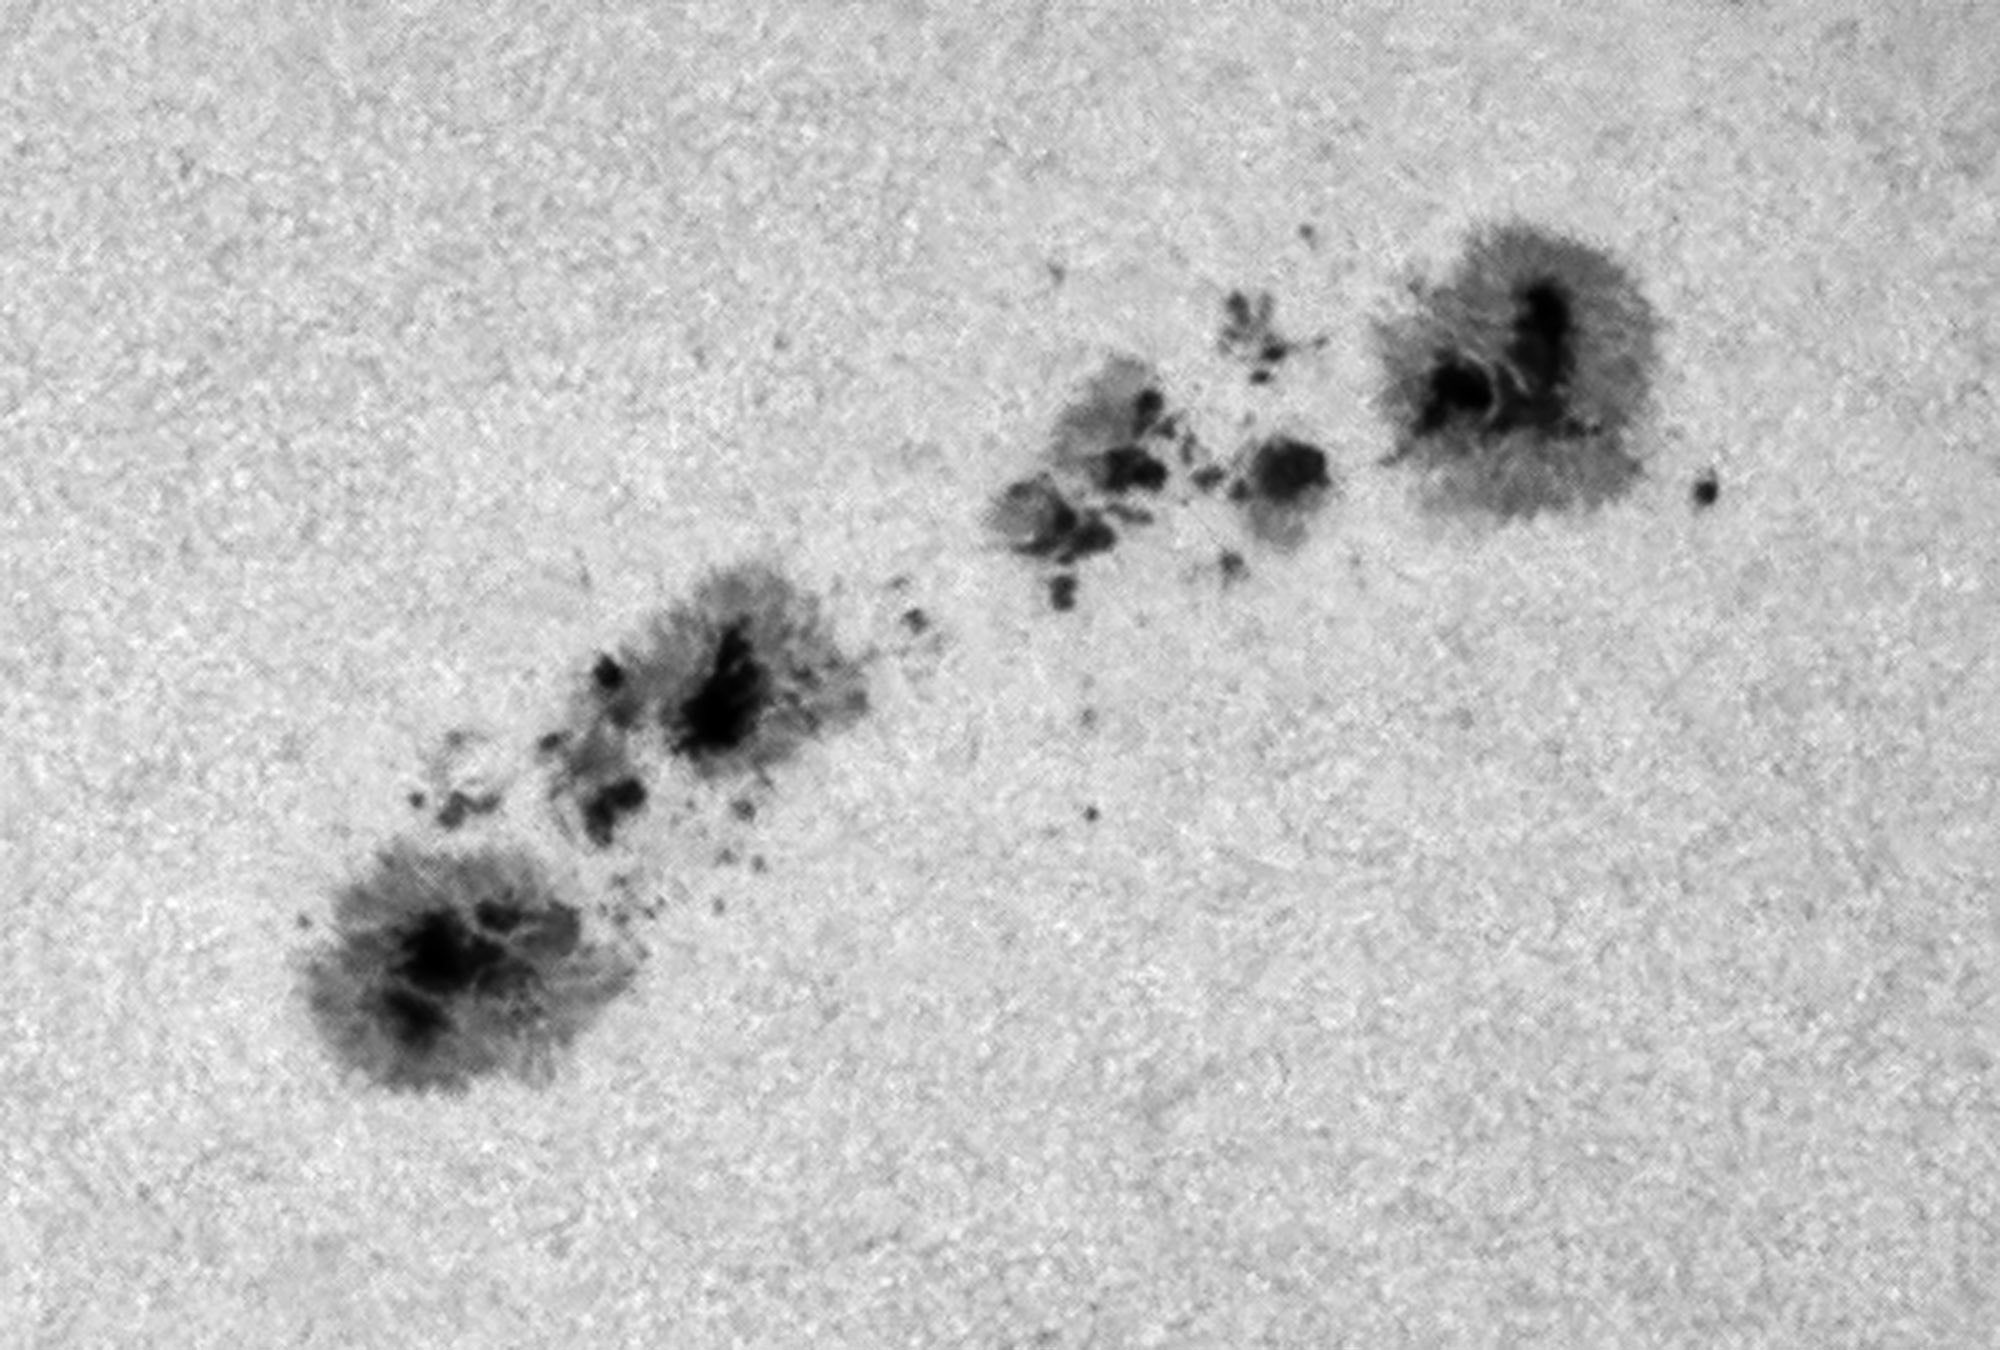 Zonnevlekken, in beeld gebracht met een telescoop en een speciaal filter dat wit licht weghaalt. (c) Sebastiaan de Vet